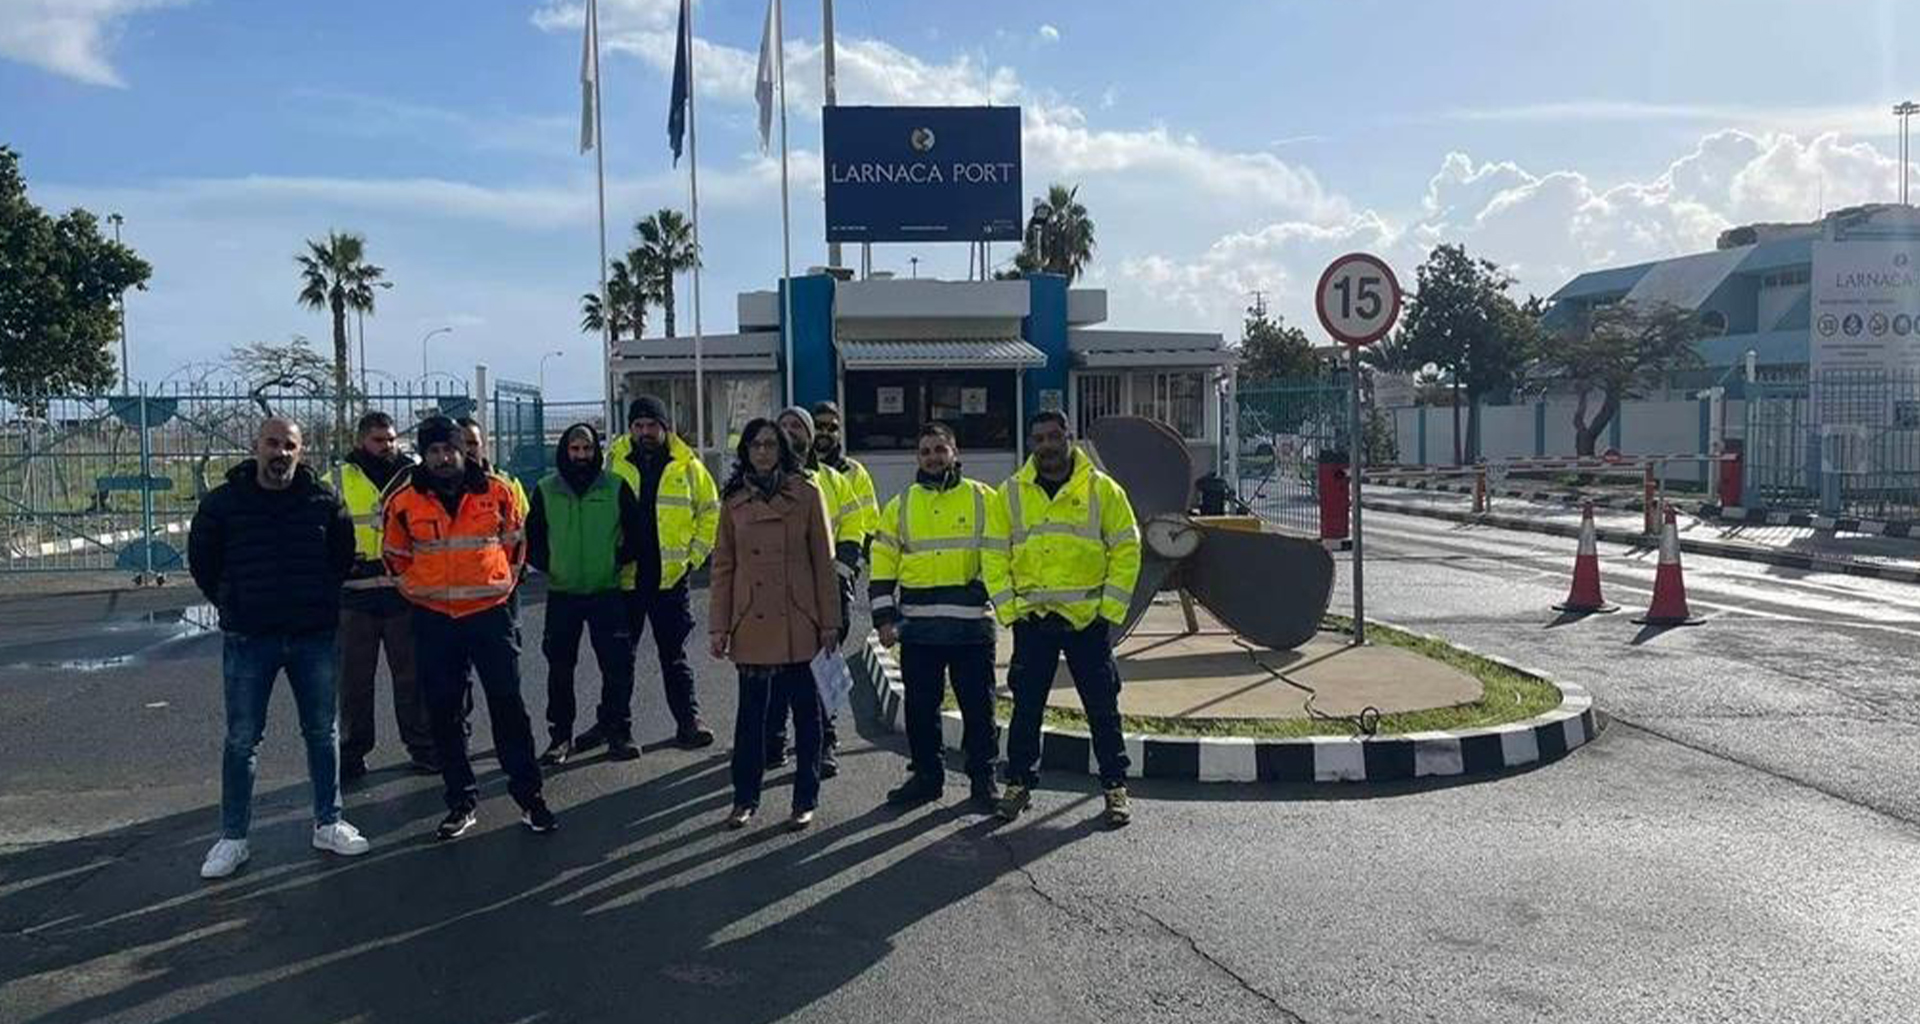 Σε απεργία κατήλθαν το πρωί οι εργαζόμενοι στο λιμάνι Λάρνακας